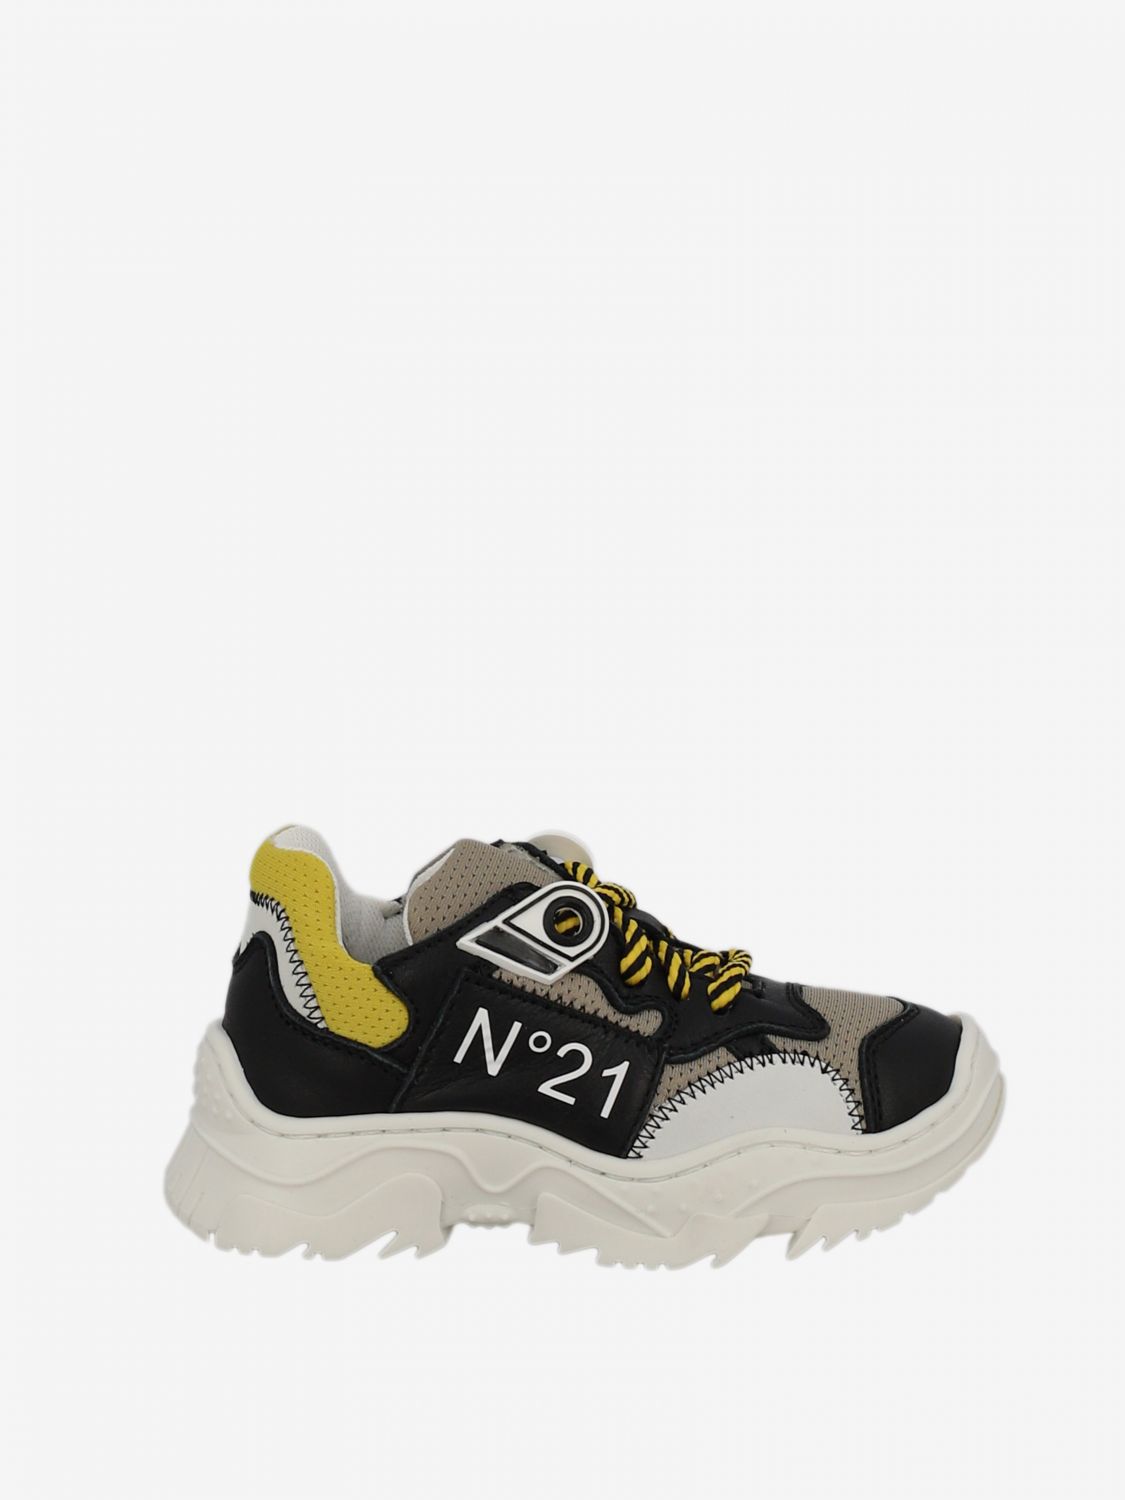 n21 scarpe